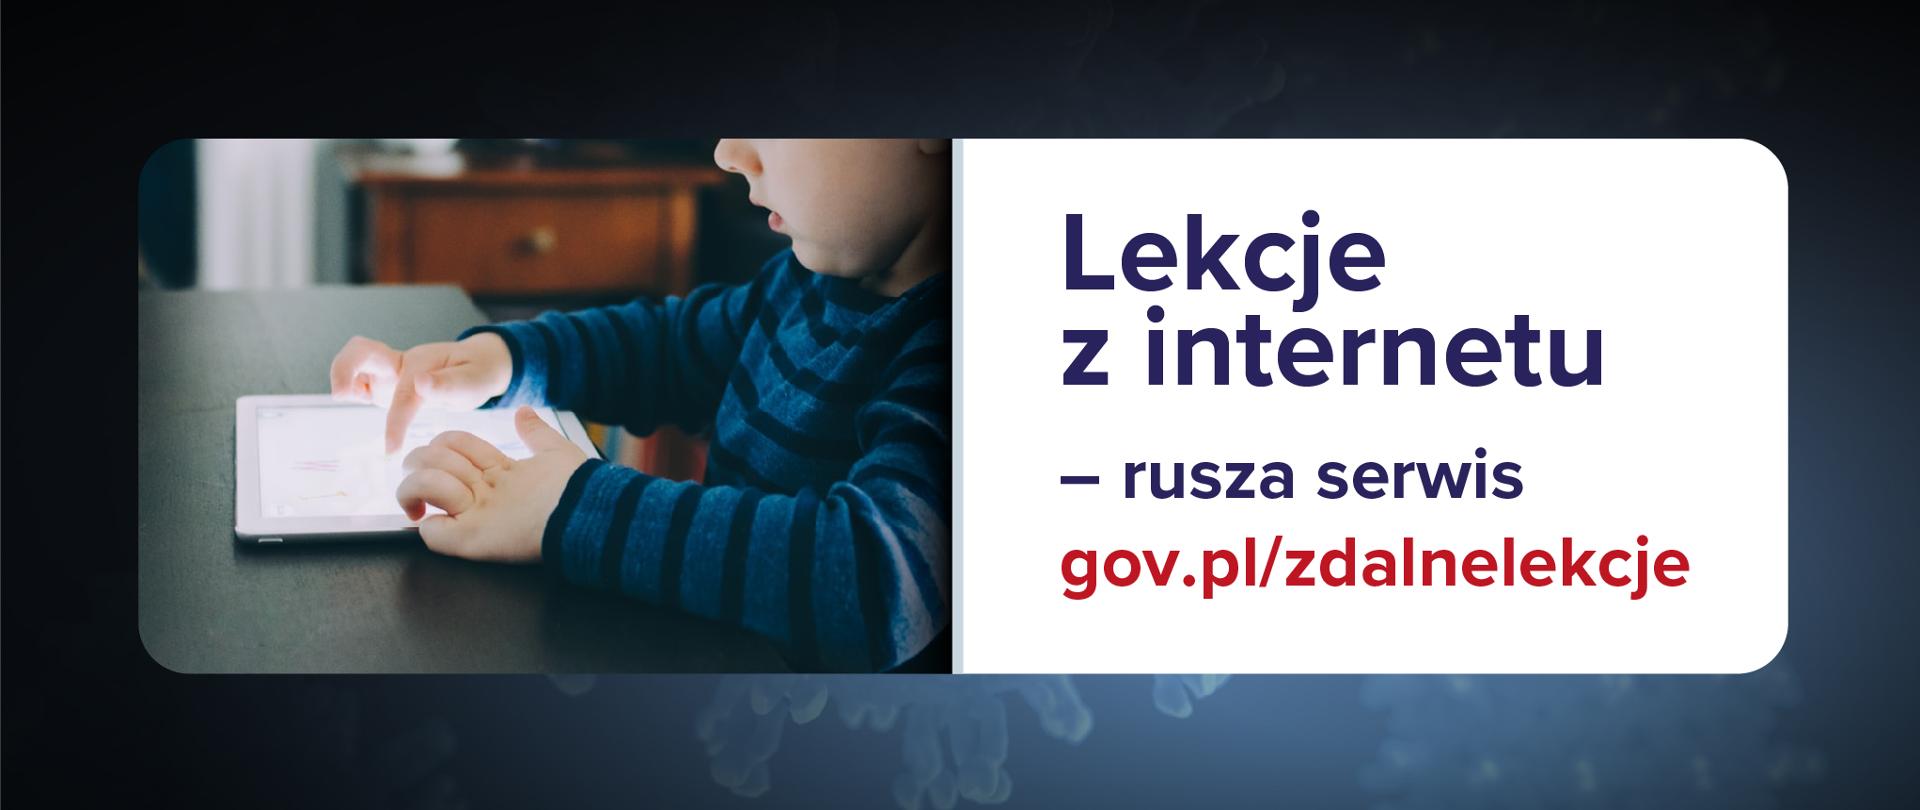 Grafika informująca z tekstem: Lekcje z internetu – rusza serwis gov.pl/zdalnelekcje
Ciemnoniebieskie tło, po lewej stronie fotografia dziecka z tabletem, a po prawo tekst na białym tle.